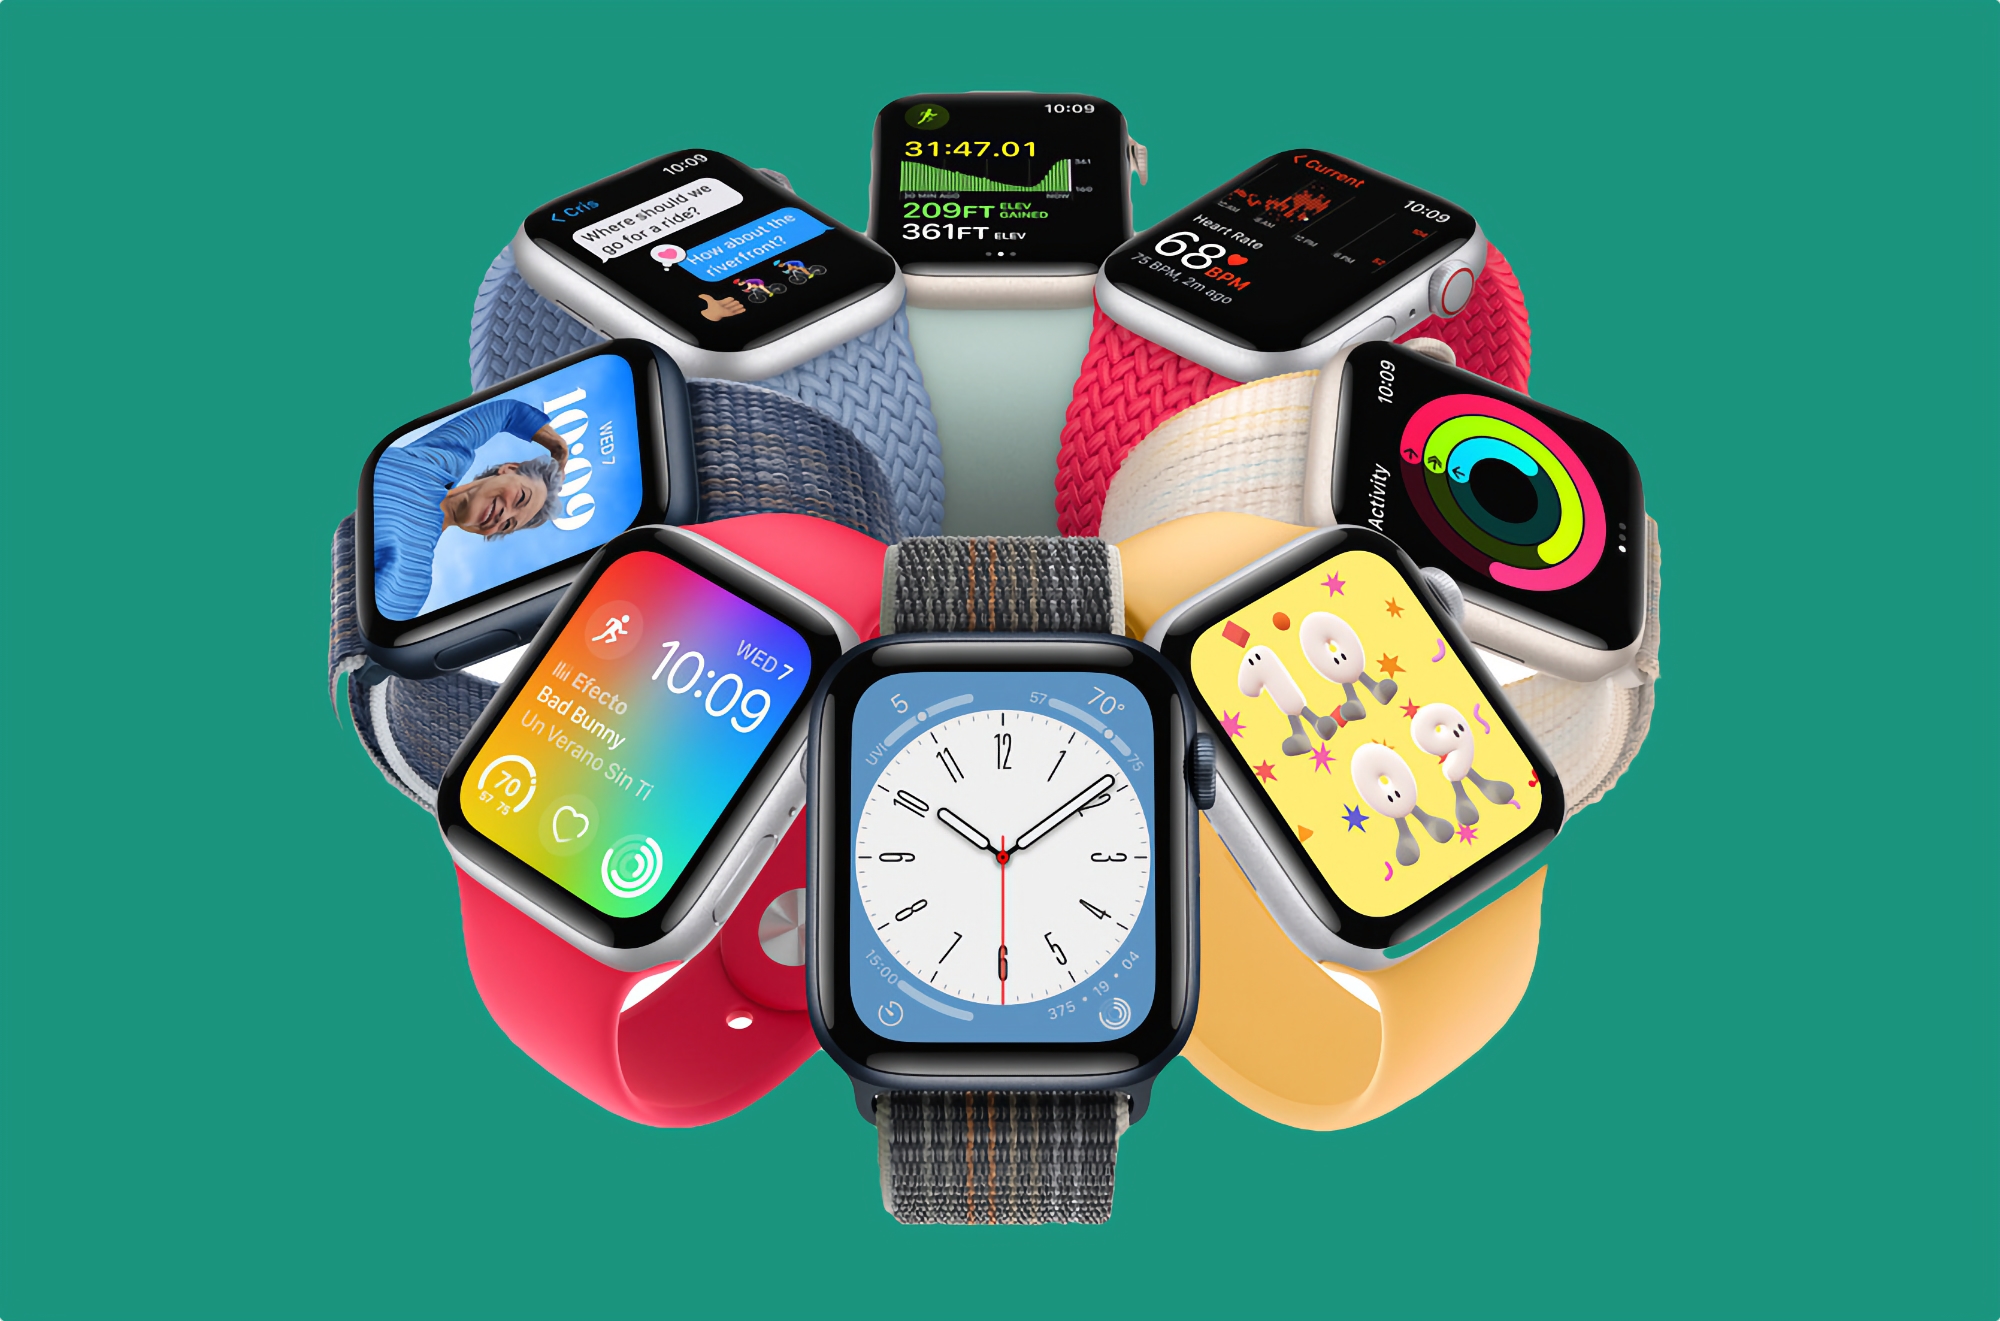 Apple Watch SE (2ª Gen) en Amazon: el smartwatch más barato de Apple 2022 con 20 dólares de descuento